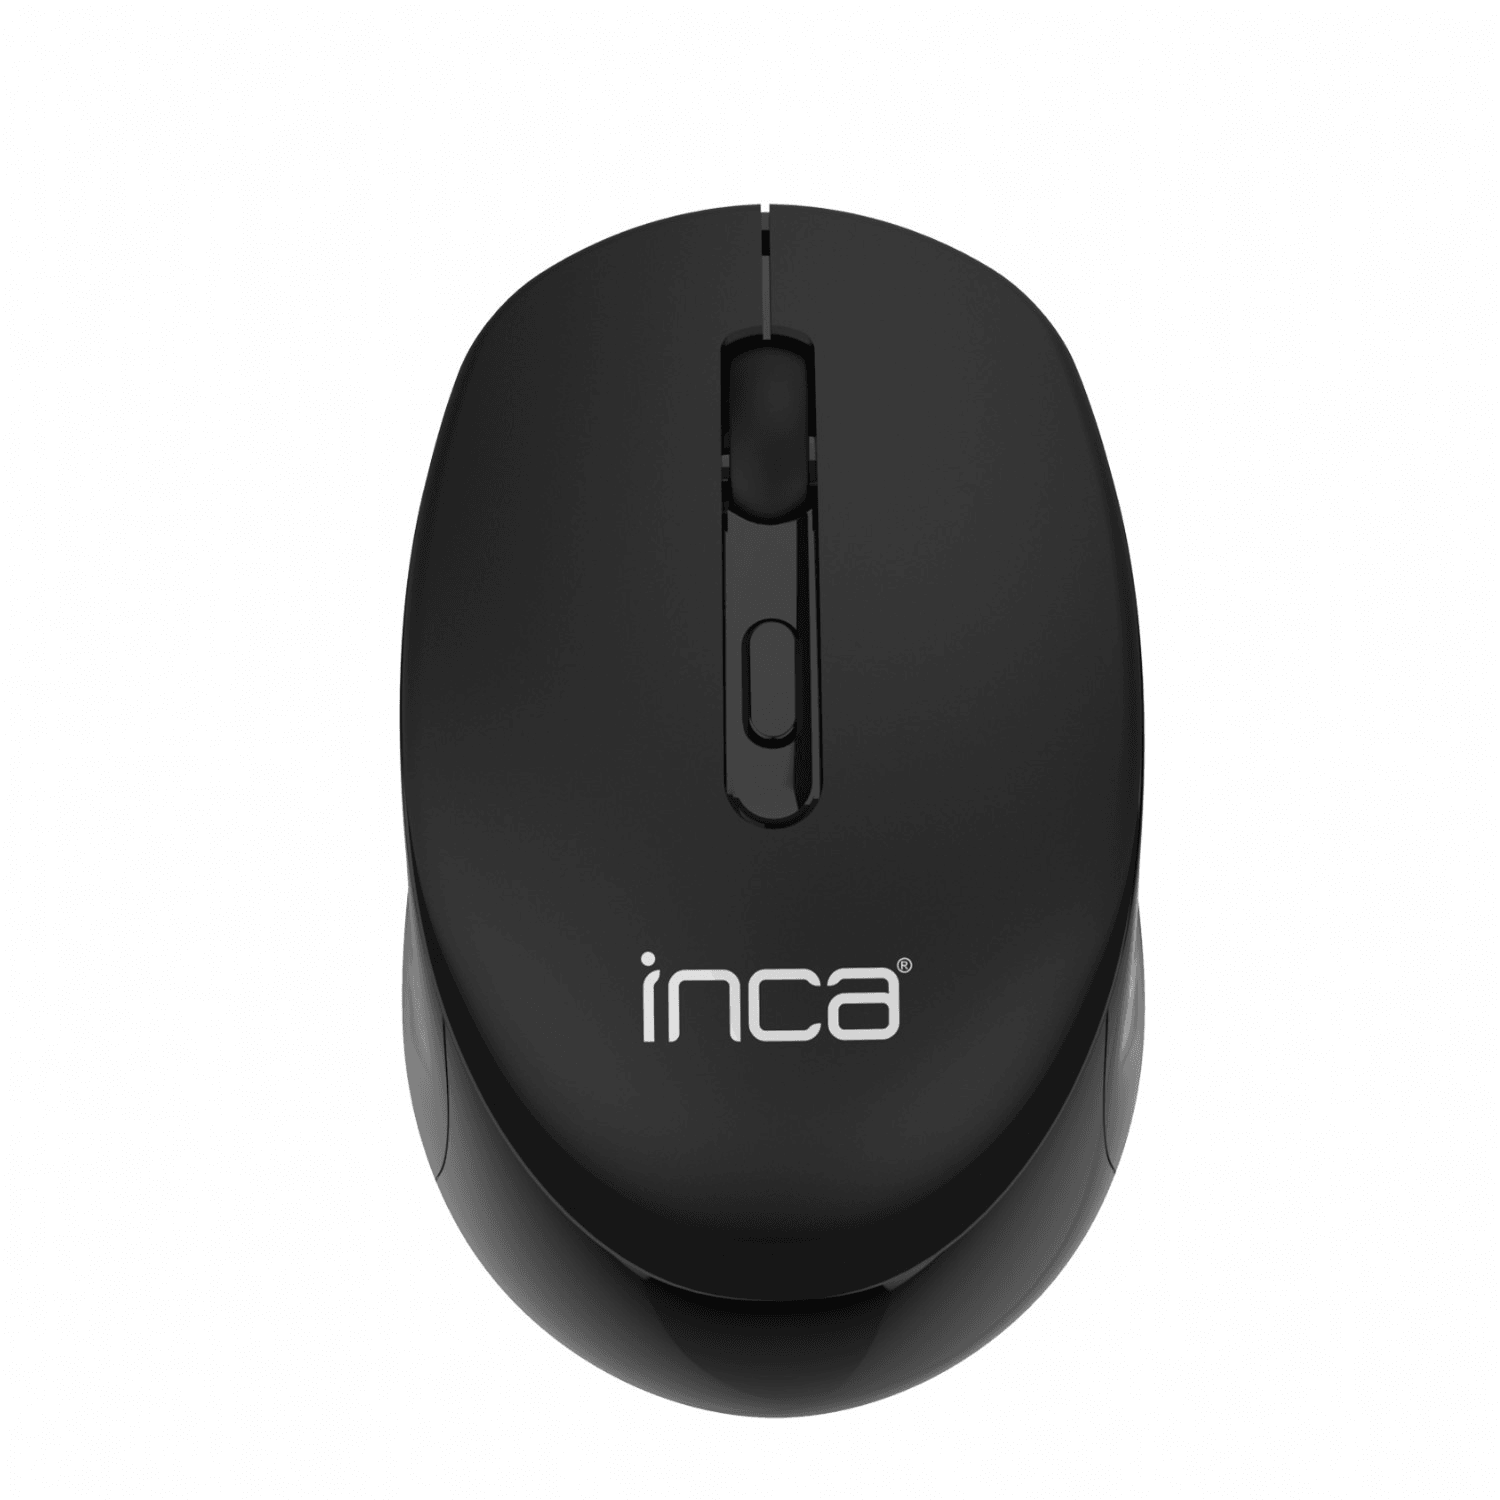 INCA IWM-243RS Candy Design Wireless Mouse, 2.4GHz Wireless, Auto Sleep Mode, 800-1600 DPI (Schwarz)